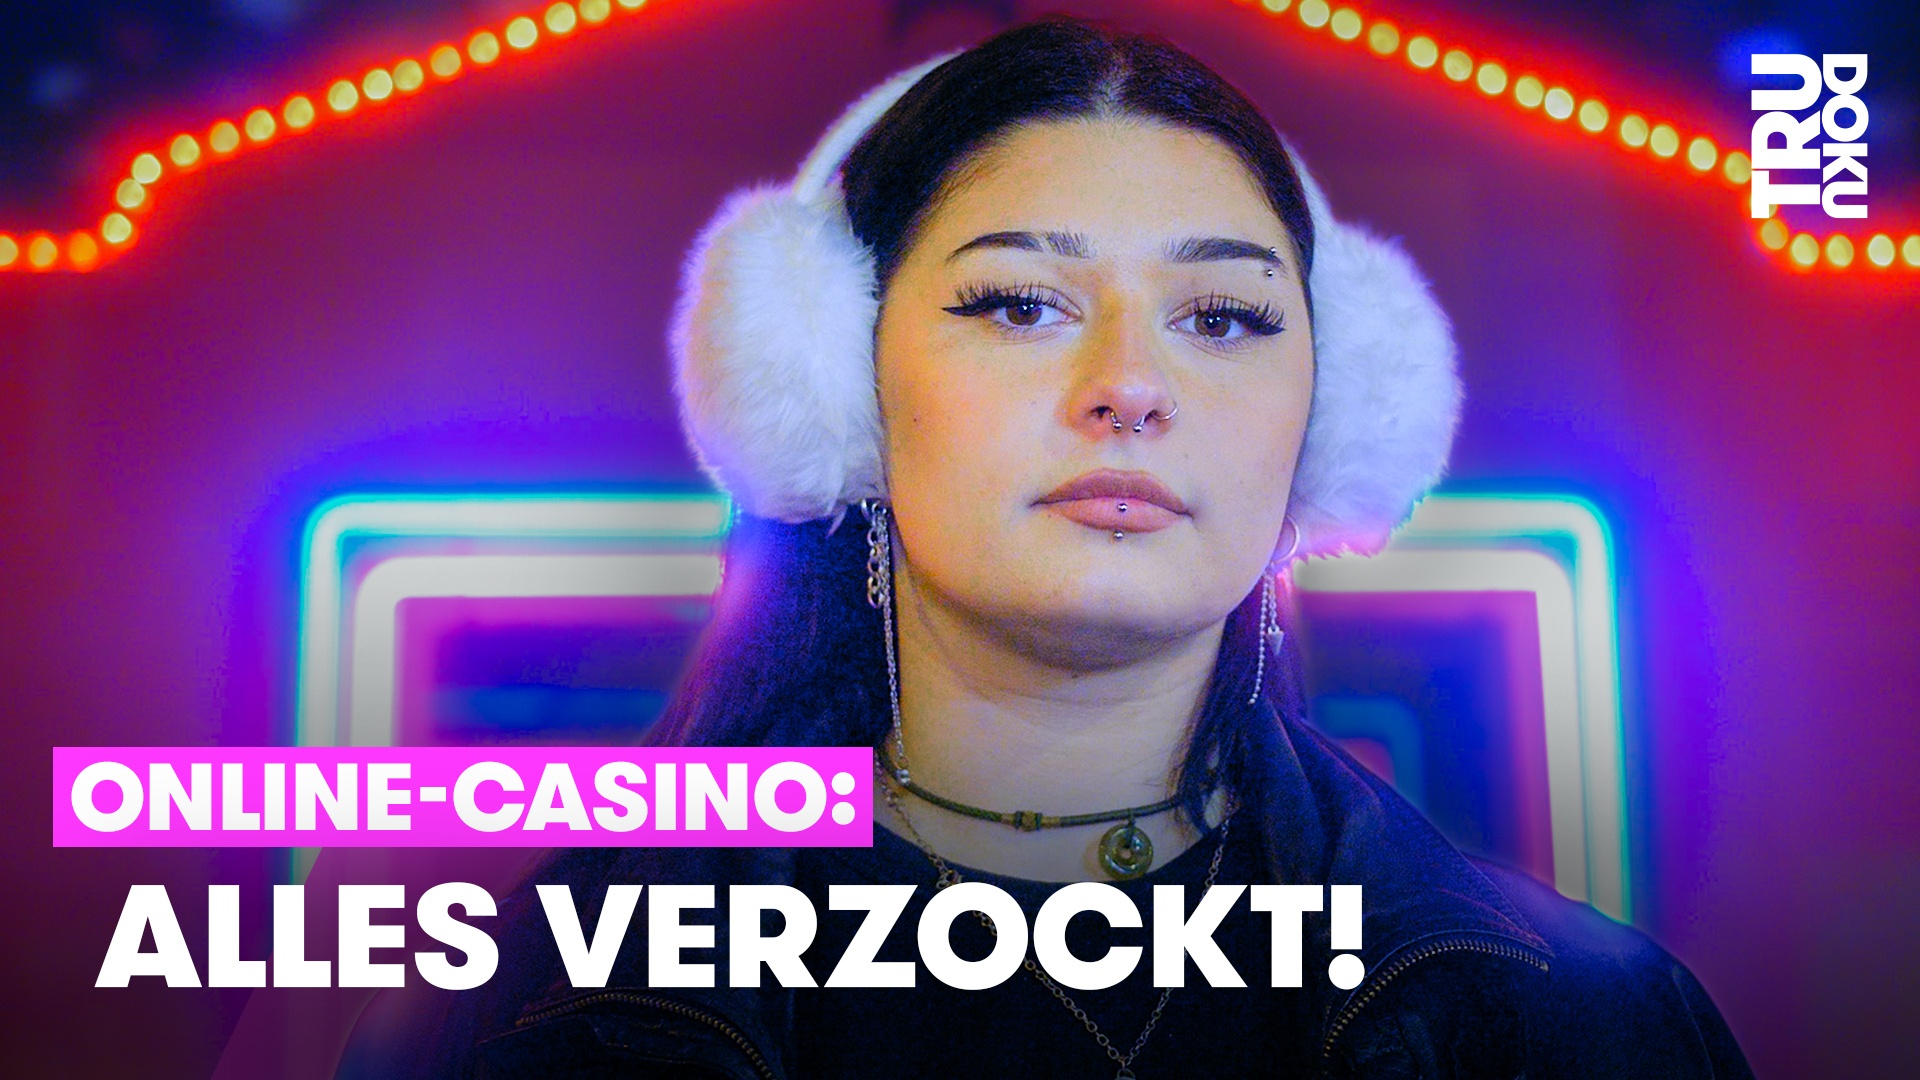 Glücksspielsucht: Defne (23) verschuldet sich durch Online-Casinos